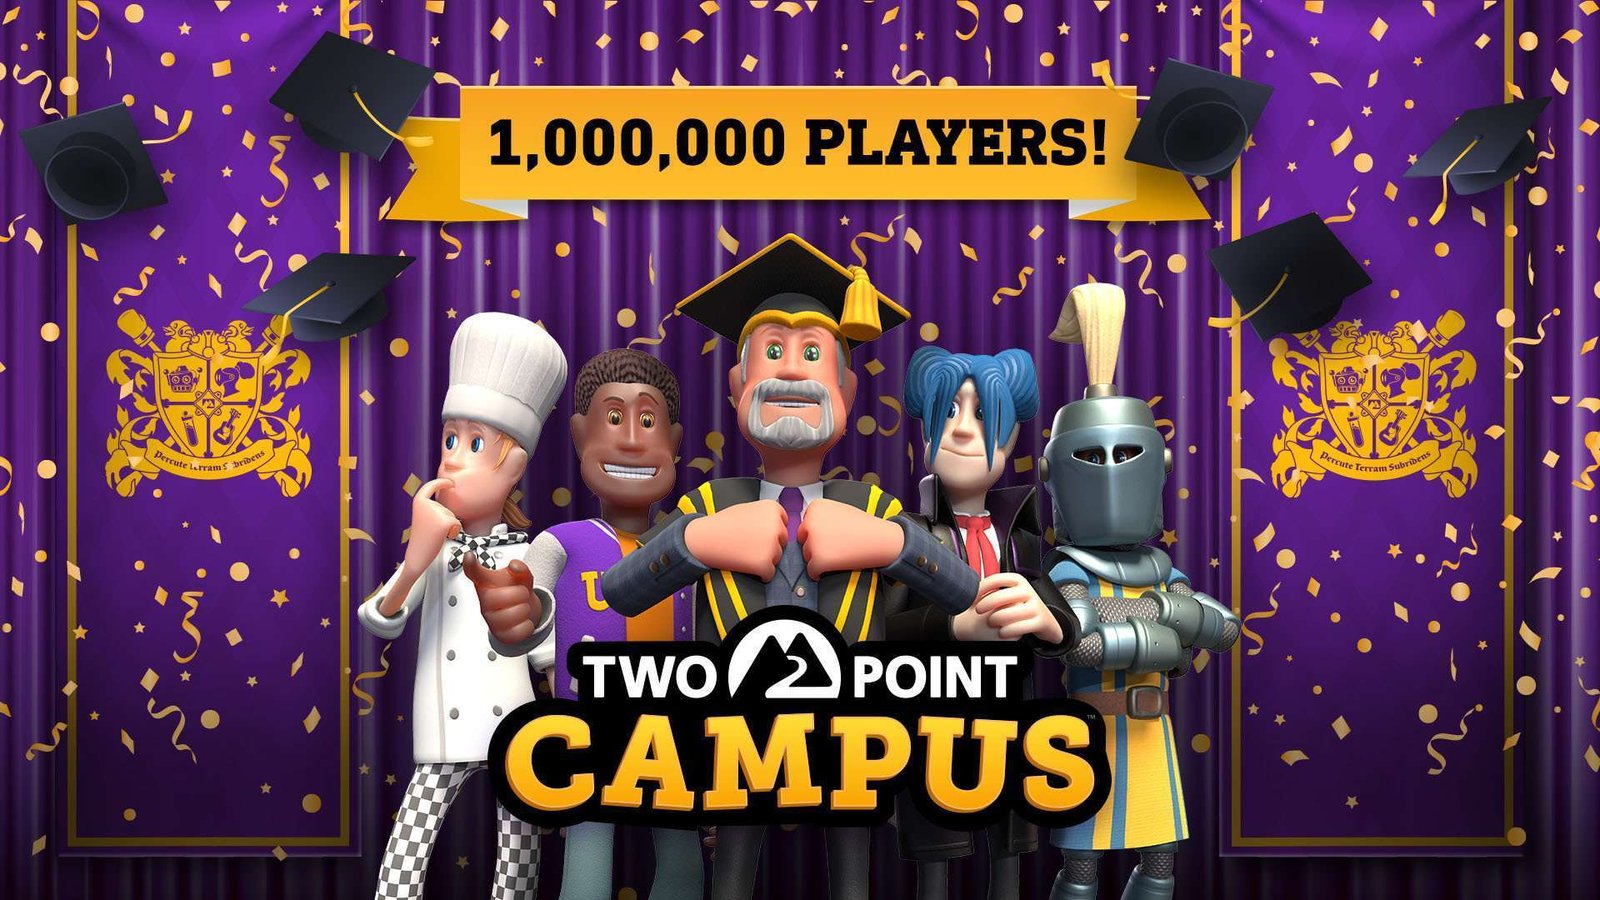 لعبة Two Point Campus تصل إلى مليون لاعب